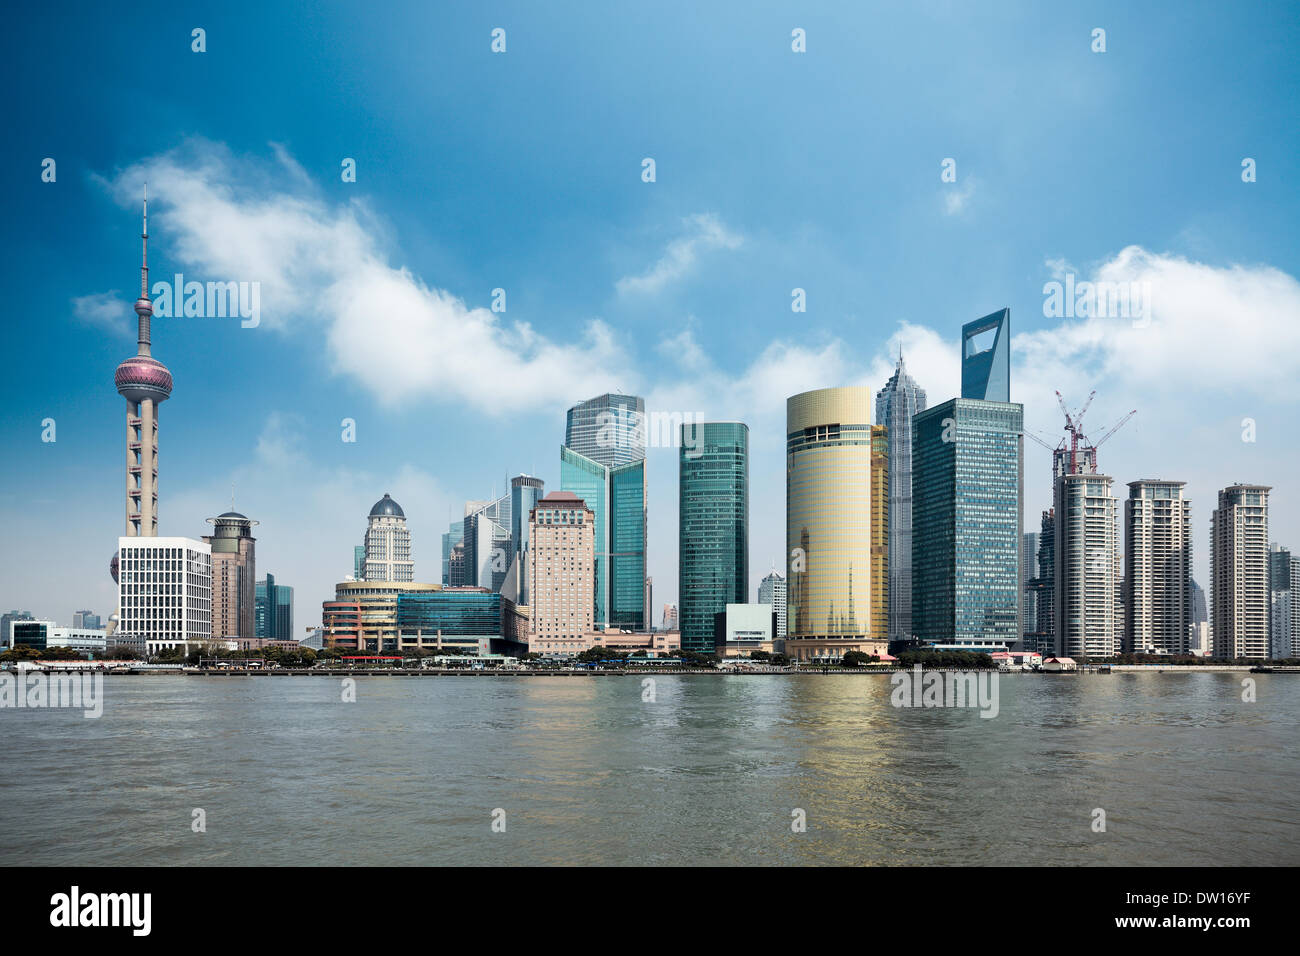 shanghai against a blue sky Stock Photo